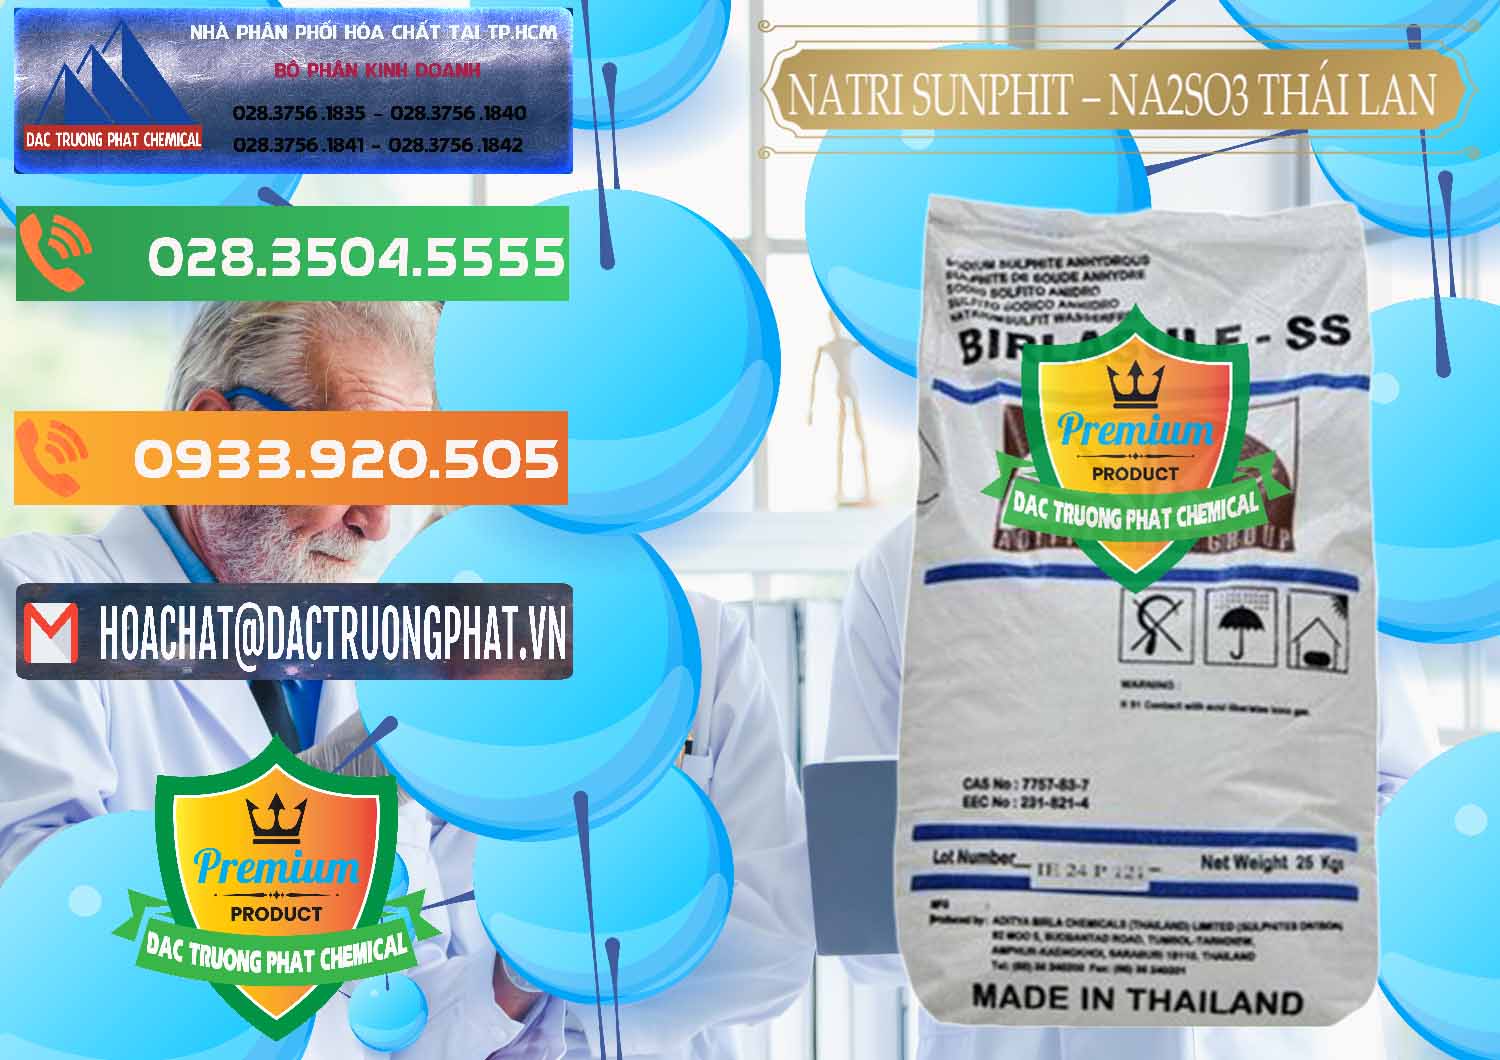 Cty bán - cung ứng Natri Sunphit - NA2SO3 Thái Lan - 0105 - Phân phối và cung cấp hóa chất tại TP.HCM - hoachatxulynuoc.com.vn